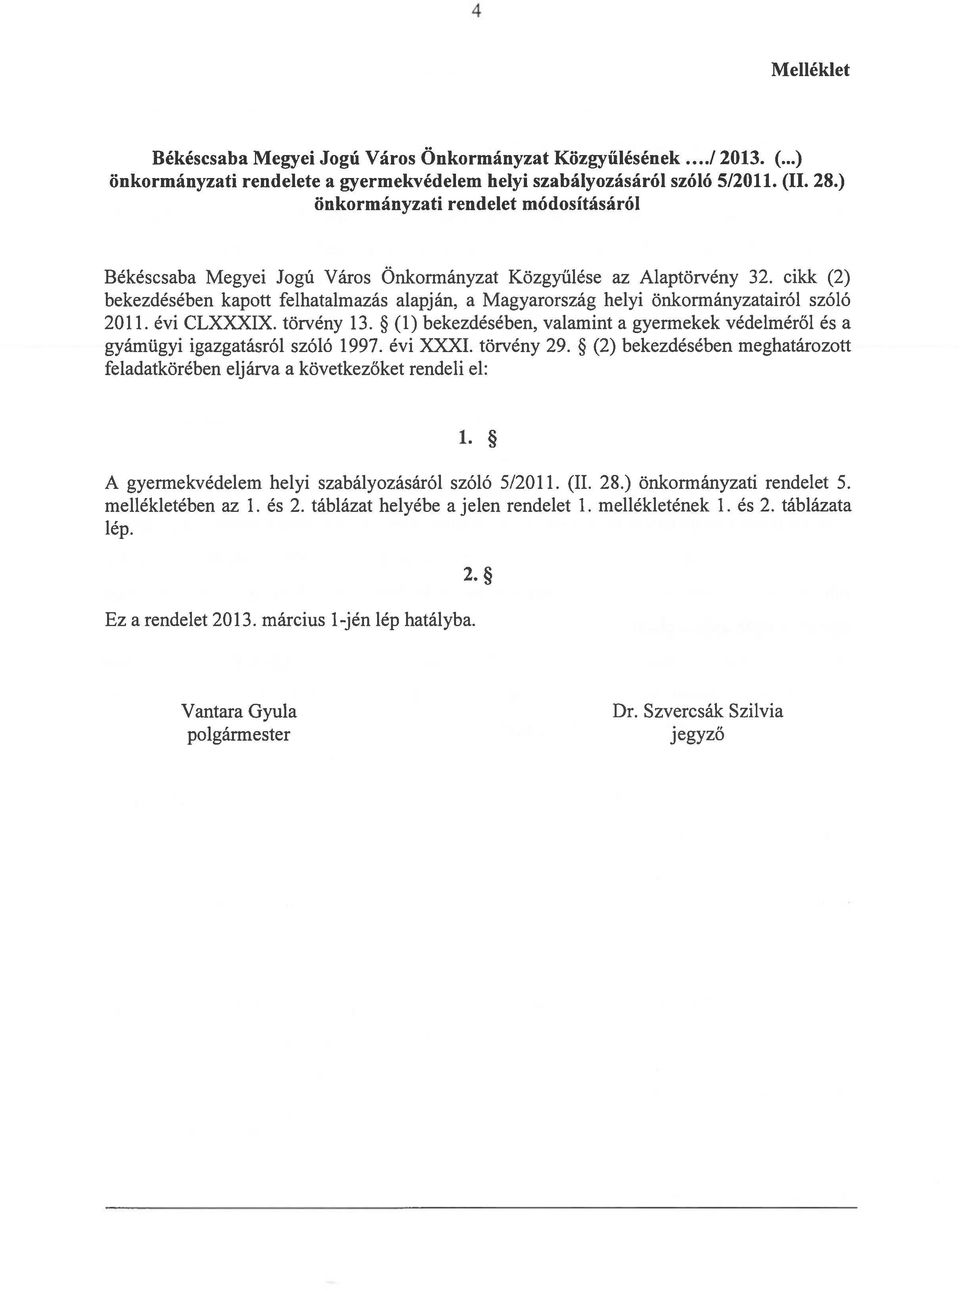 cikk (2) bekezdésében kapott felhatalmazás alapján, a Magyarország helyi önkormányzatairól szóló 2011. évi CLXXXX. törvény 13.